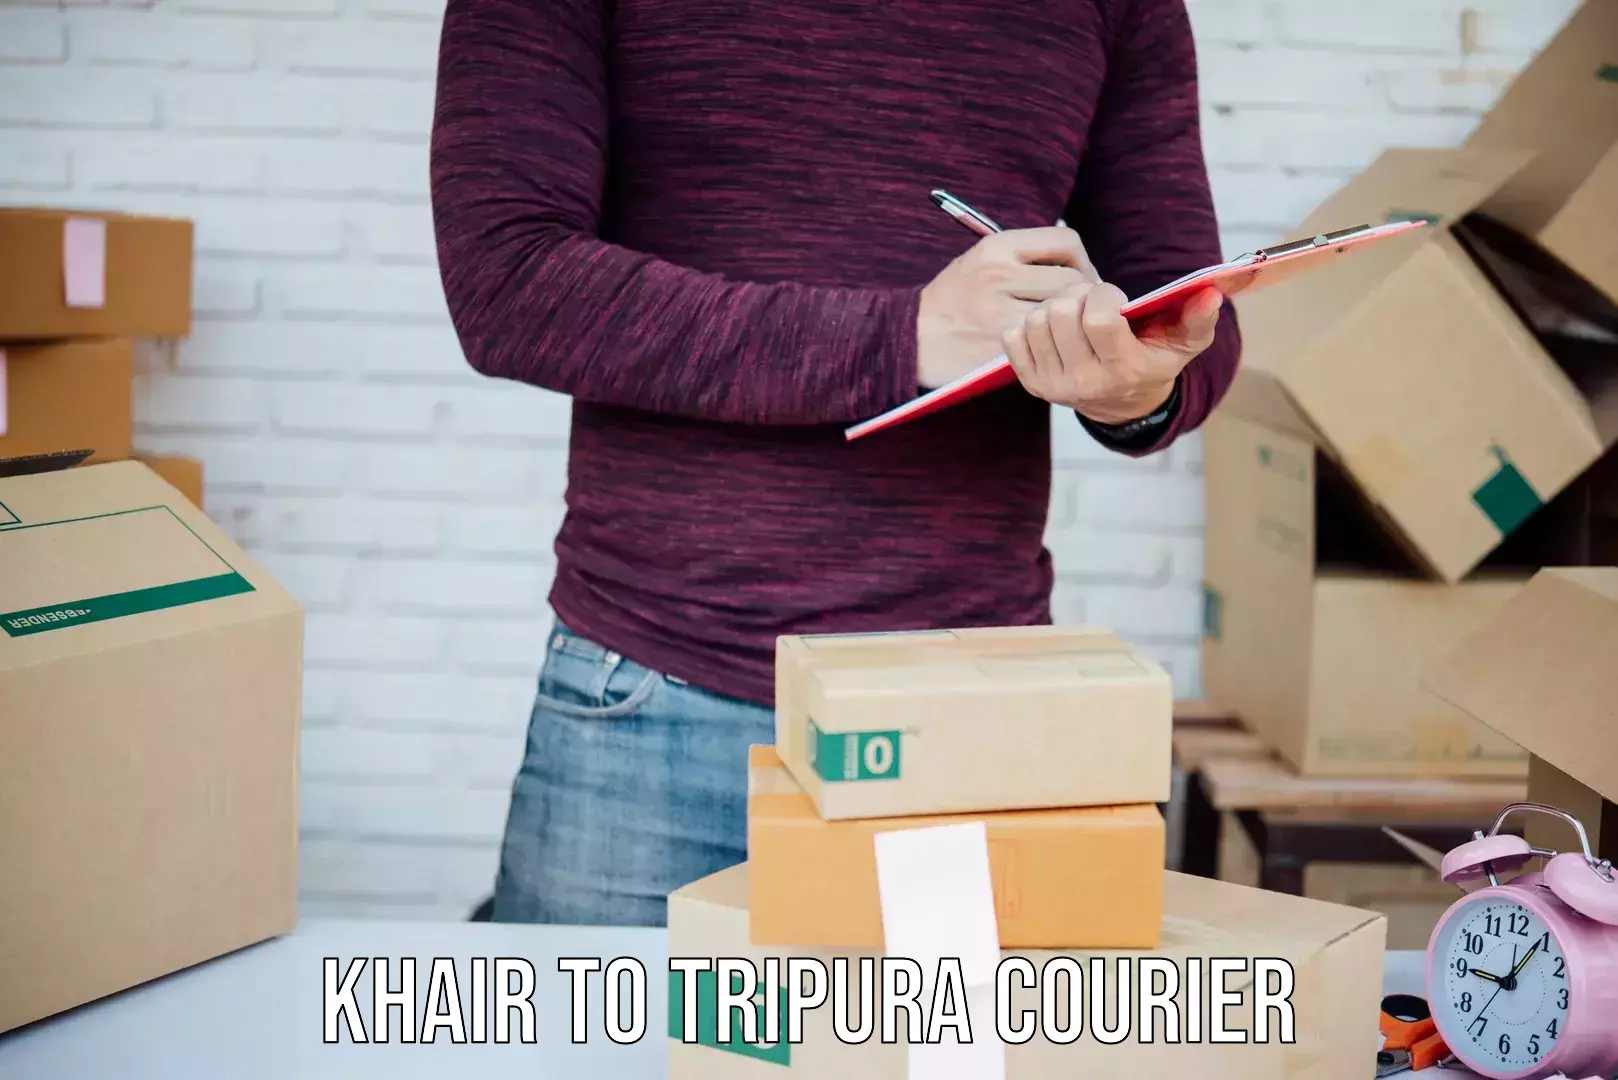 Customer-focused courier Khair to Santirbazar